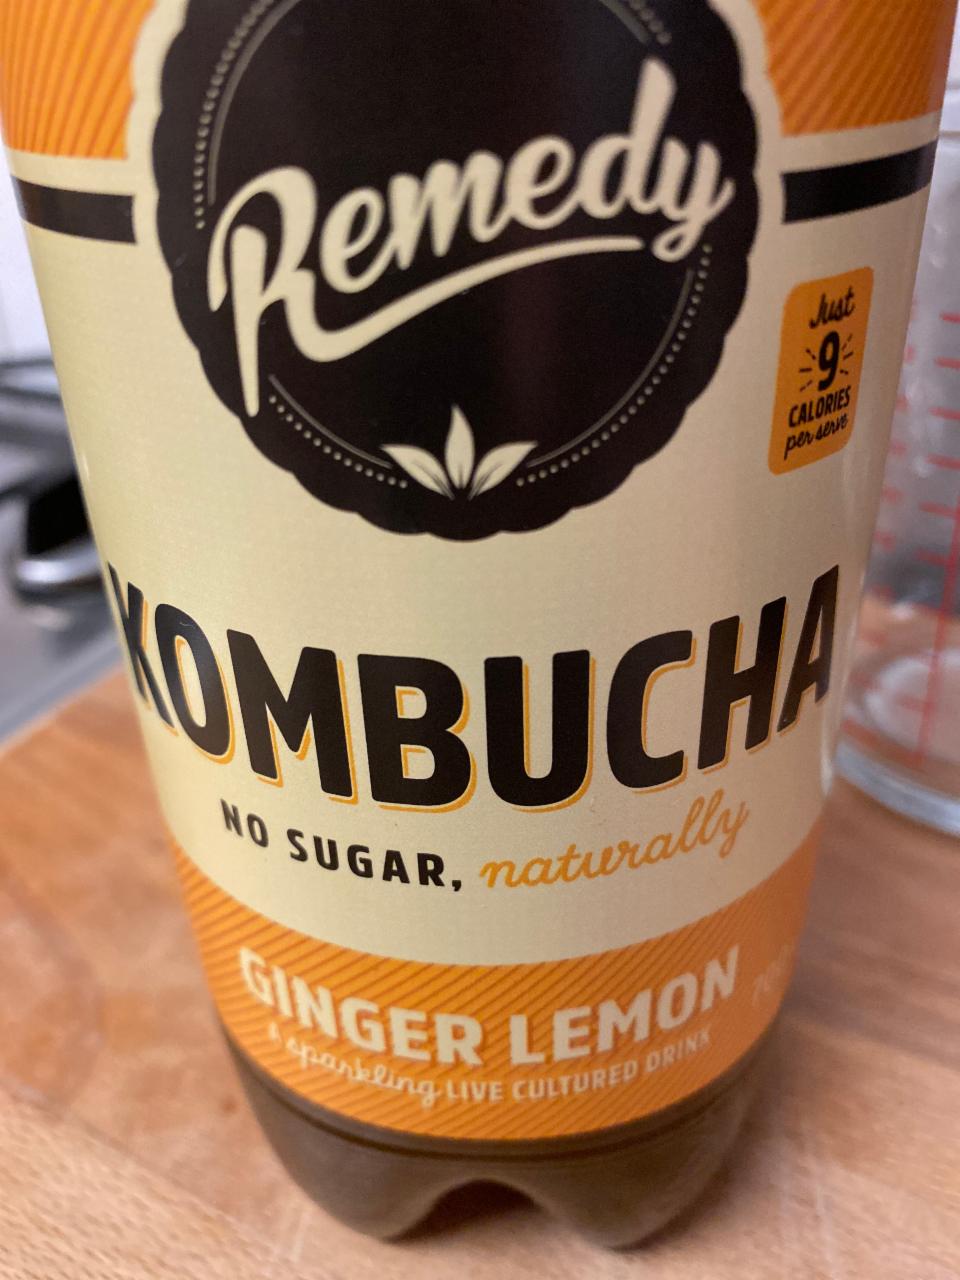 Fotografie - Remedy kombucha ginger & lemon